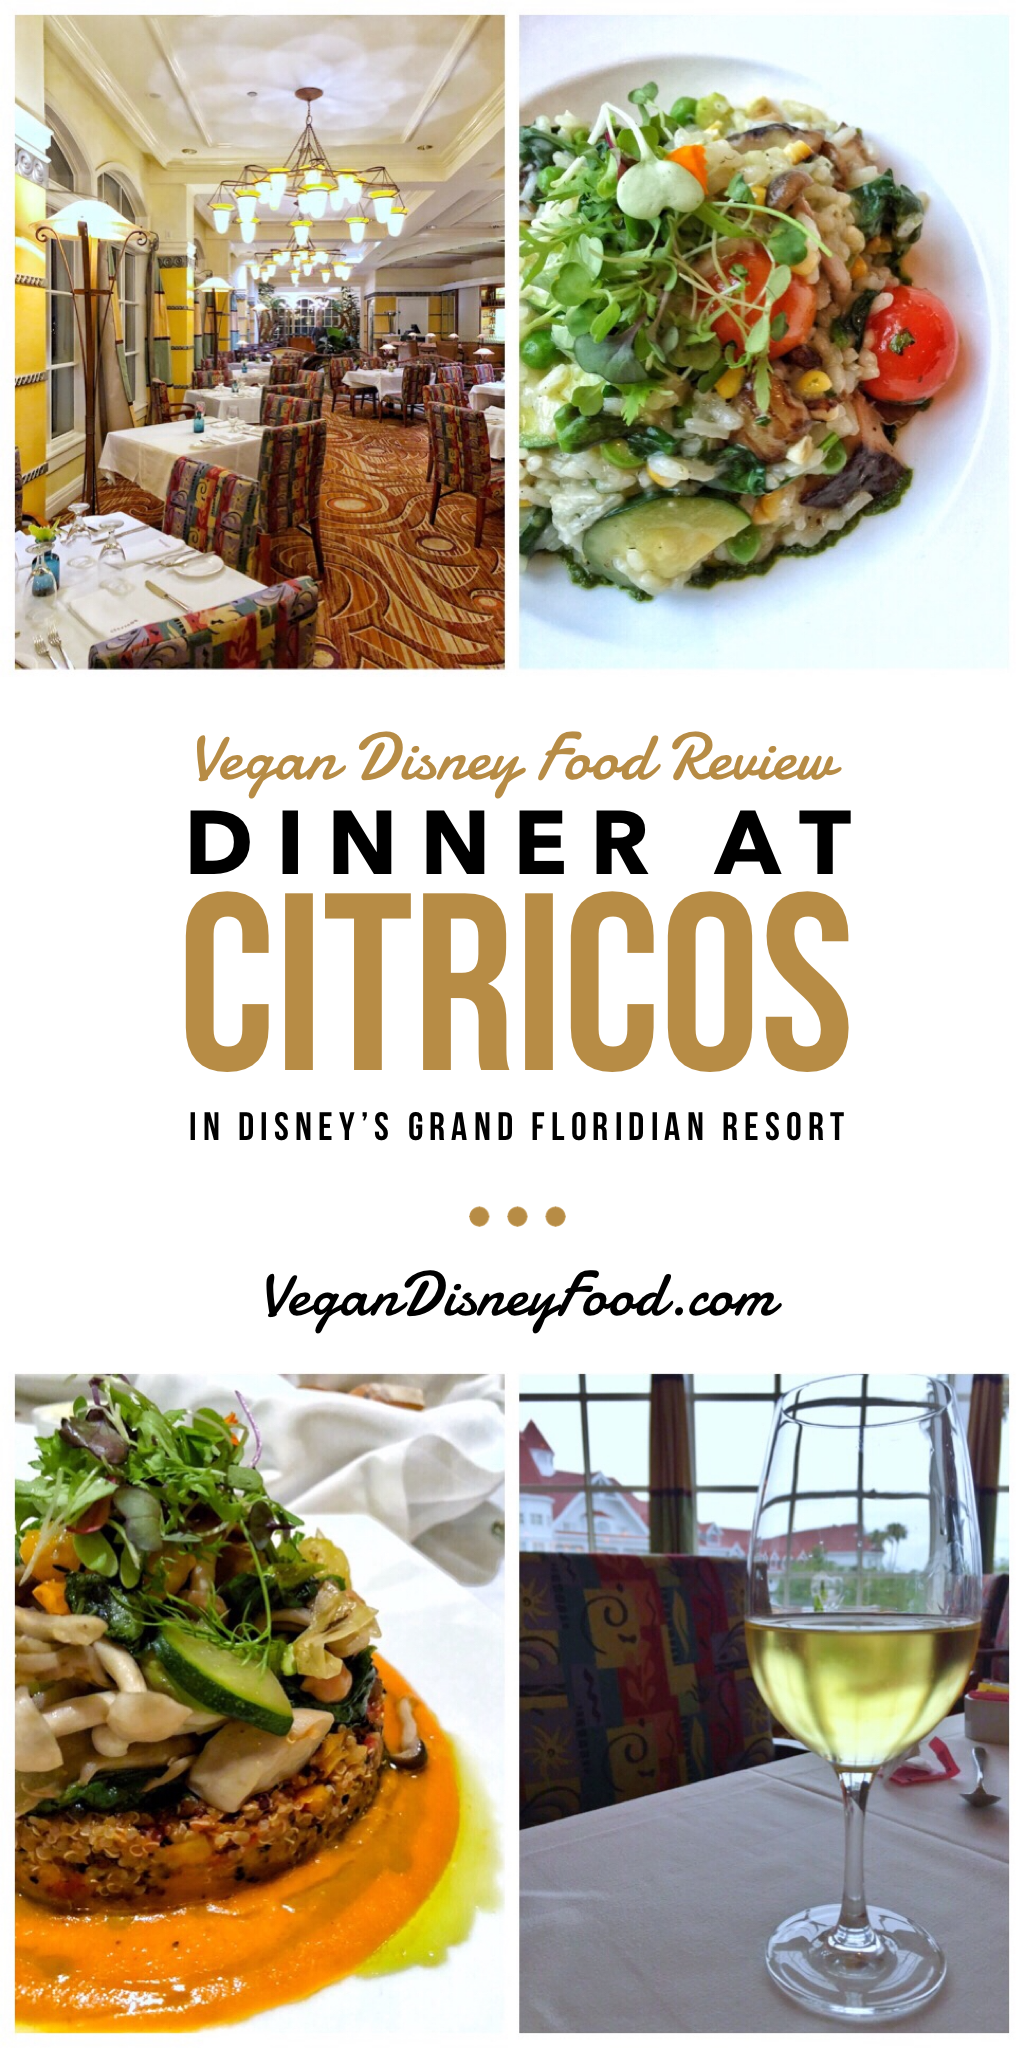 Vegan Disney Food Review: Dinner at Citricos in Disney’s Grand Floridian Resort